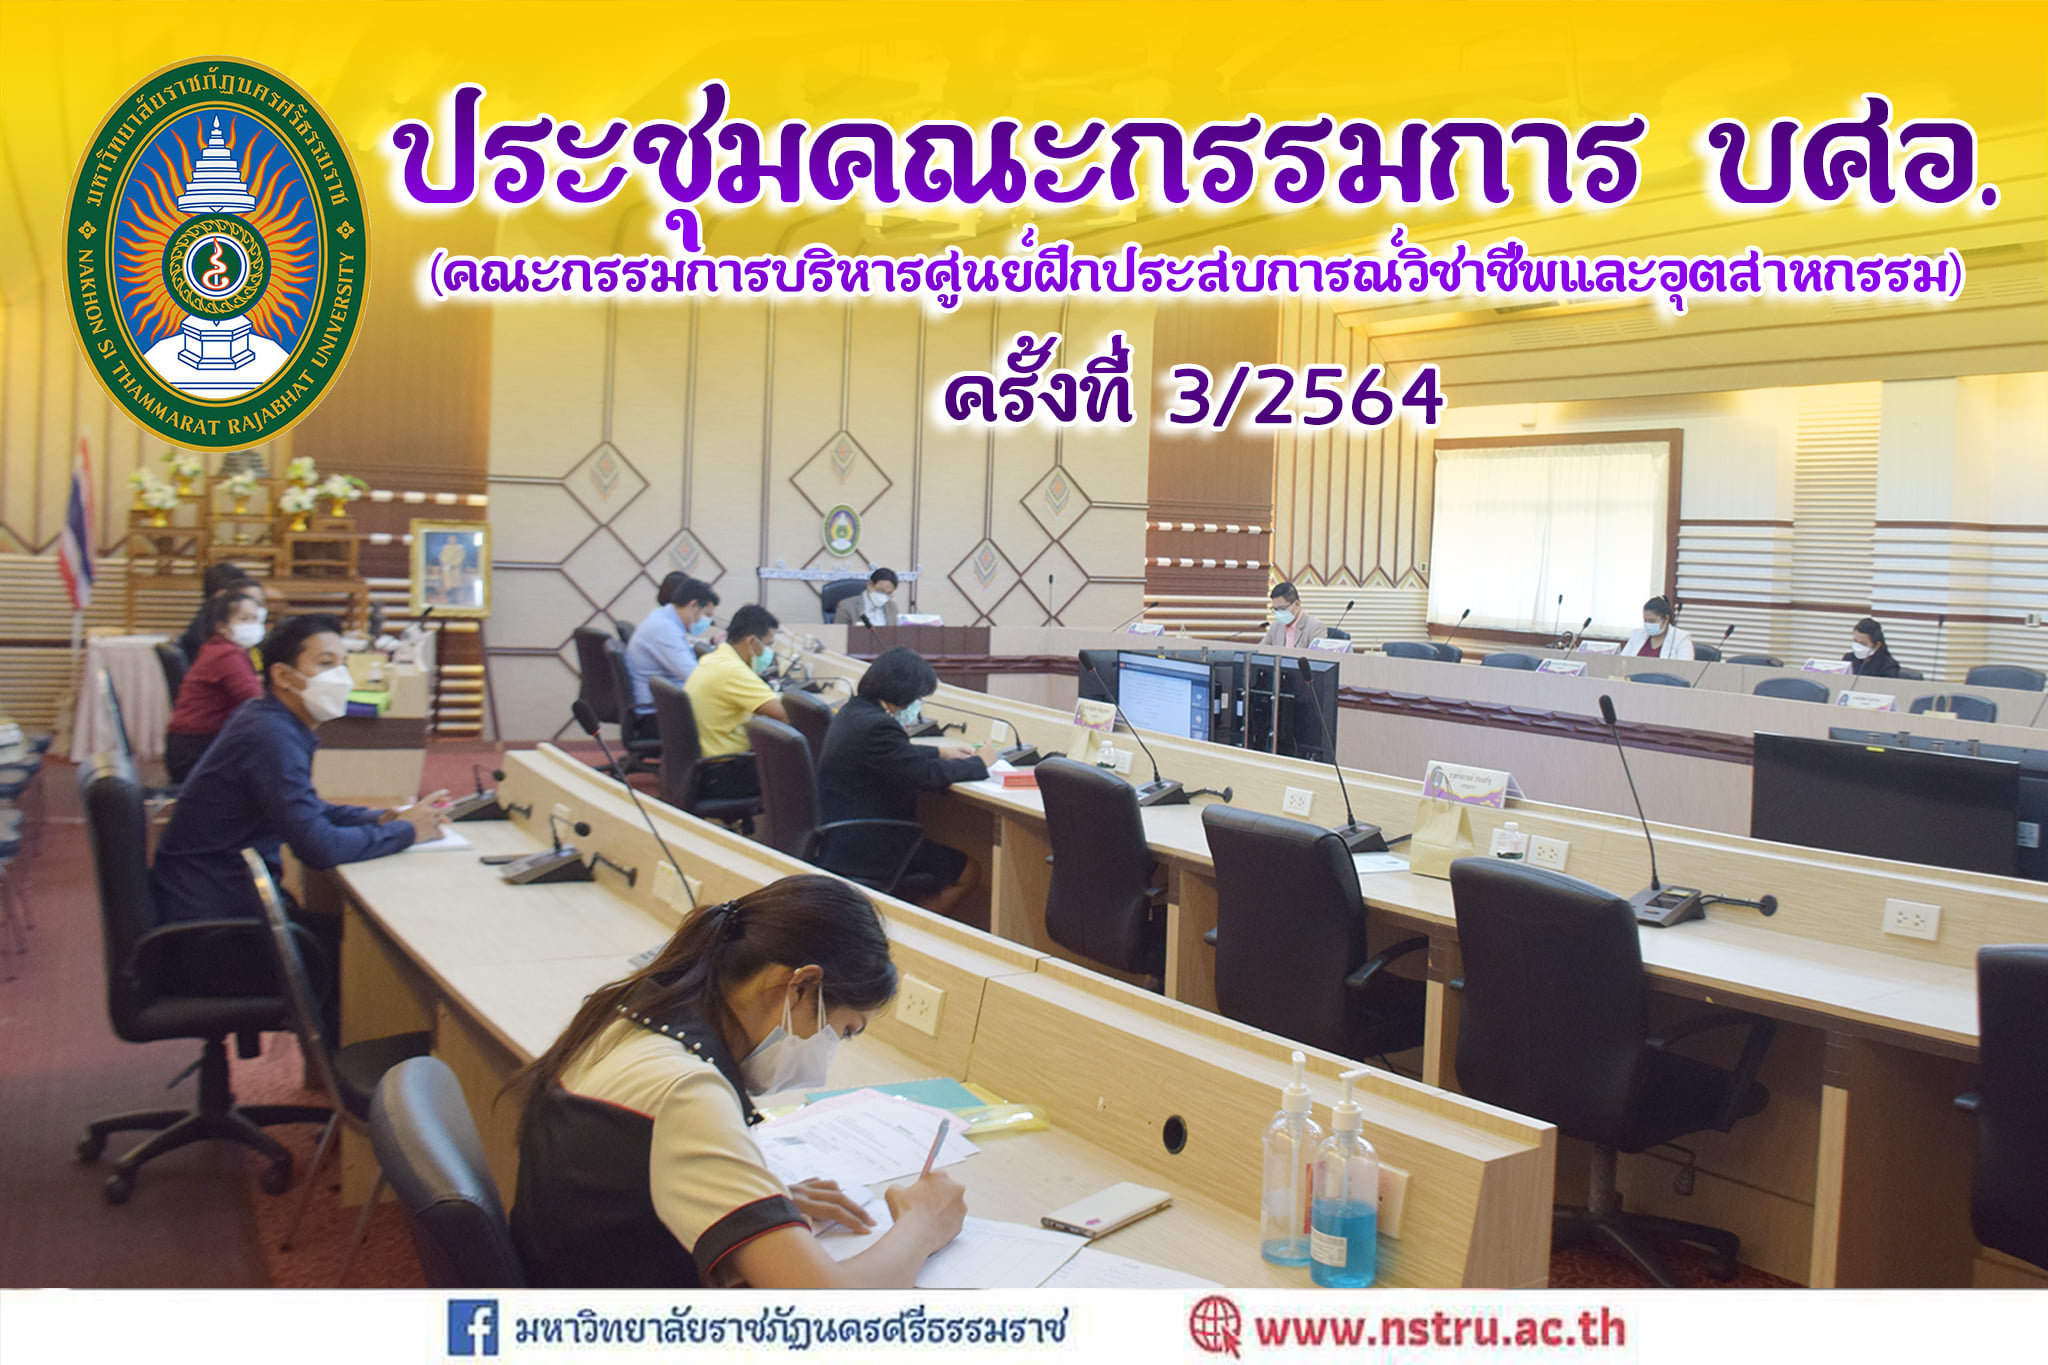 ประชุมคณะกรรมการบริหารศูนย์ฝึกประสบการณ์วิชาชีพและอุตสาหกรรมสร้างสรรค์ (บศอ.) มหาวิทยาลัยราชภัฎนครศรีธรรมราช ครั้งที่ 3/2564